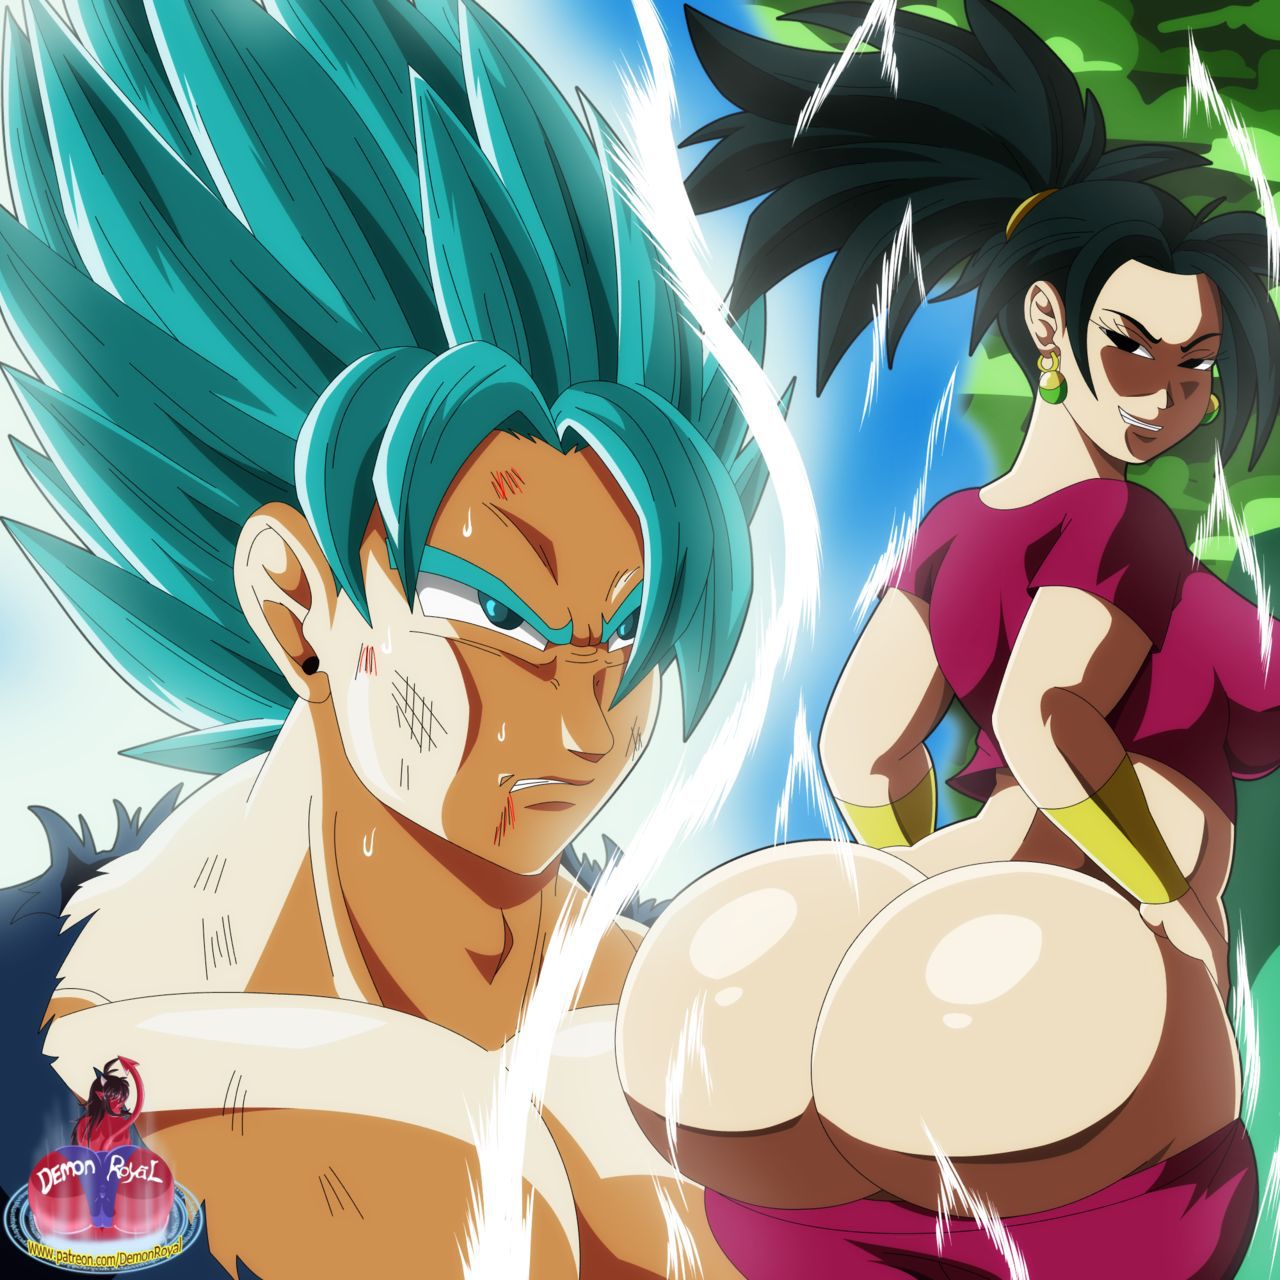 [Demon Royal] Goku vs Kale and Caulifla (Dragon Ball Super) 1